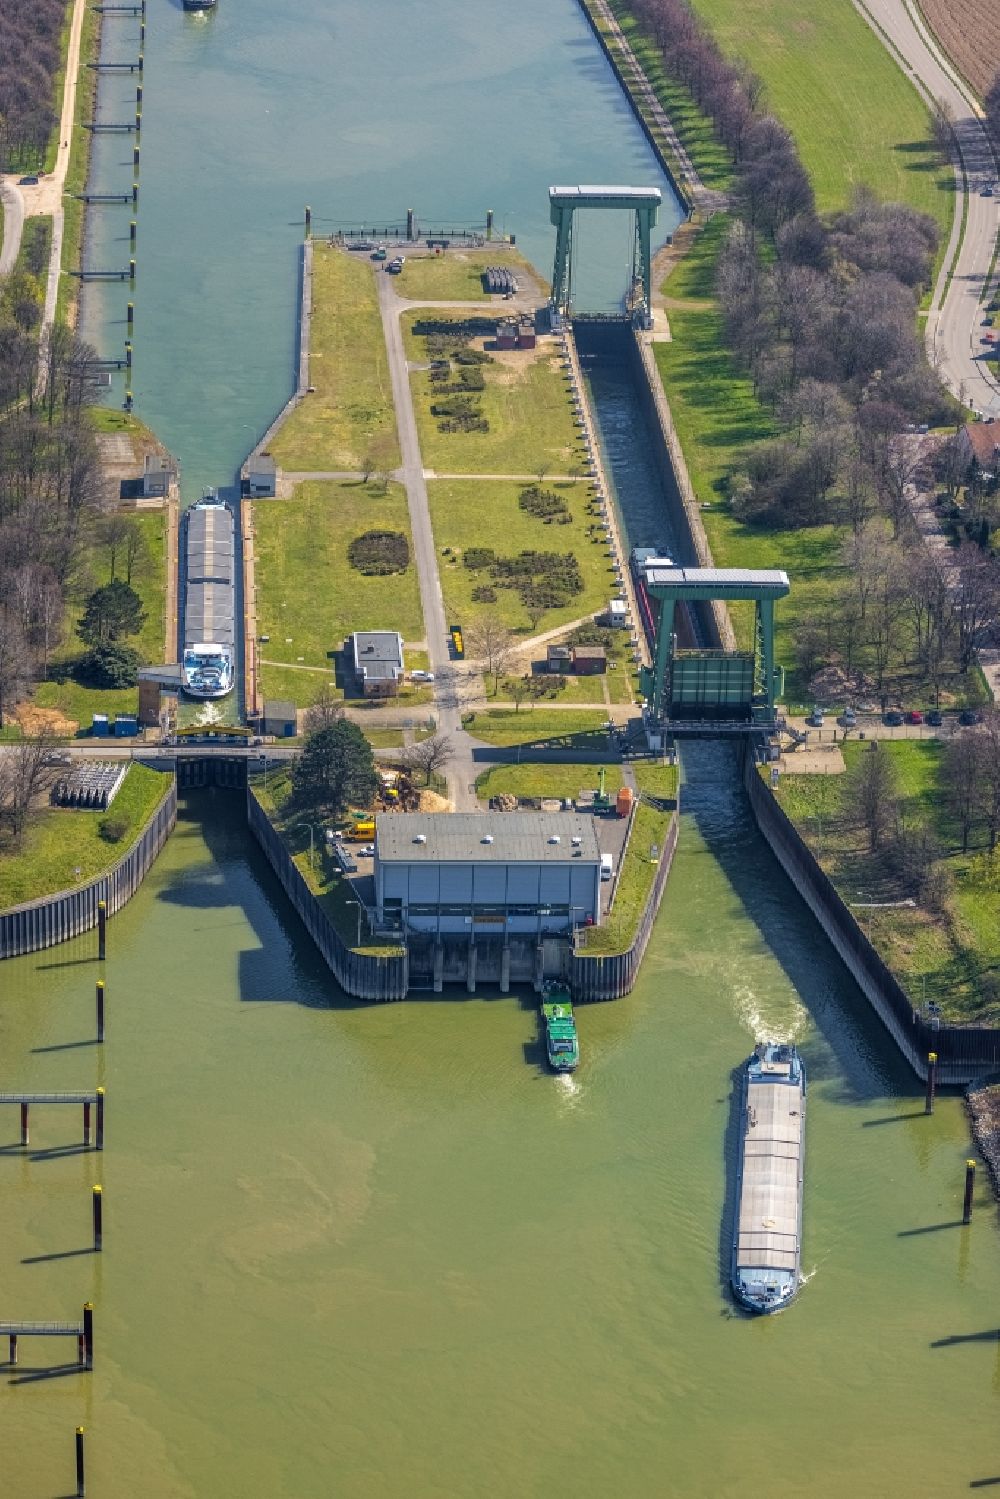 Luftbild Wesel - Schleusenanlagen am Ufer des Wesel-Datteln-Kanal in Wesel im Bundesland Nordrhein-Westfalen, Deutschland